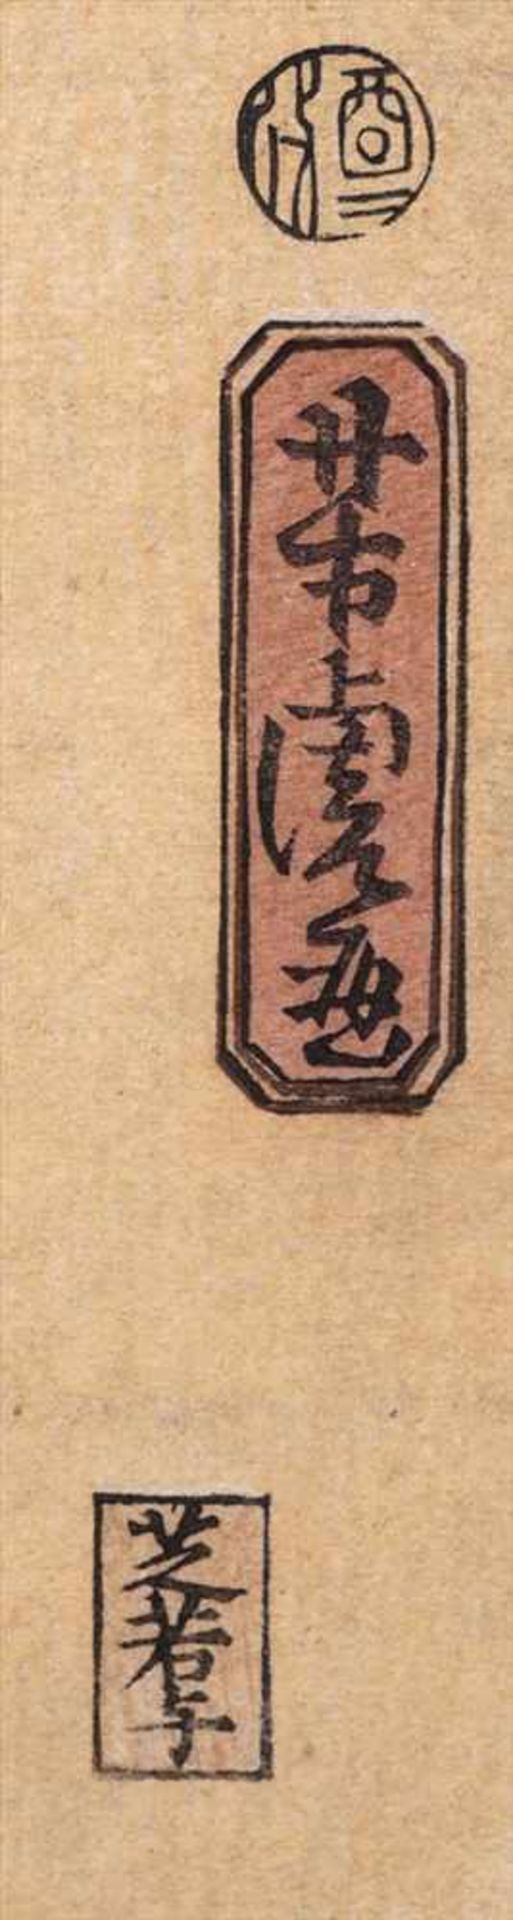 Utagawa, Yoshitora, ca. 1840 - 1880Farbholzschnitt "Zwei Amerikaner" aus der Serie "Gaikoku jimbutsu - Image 3 of 7